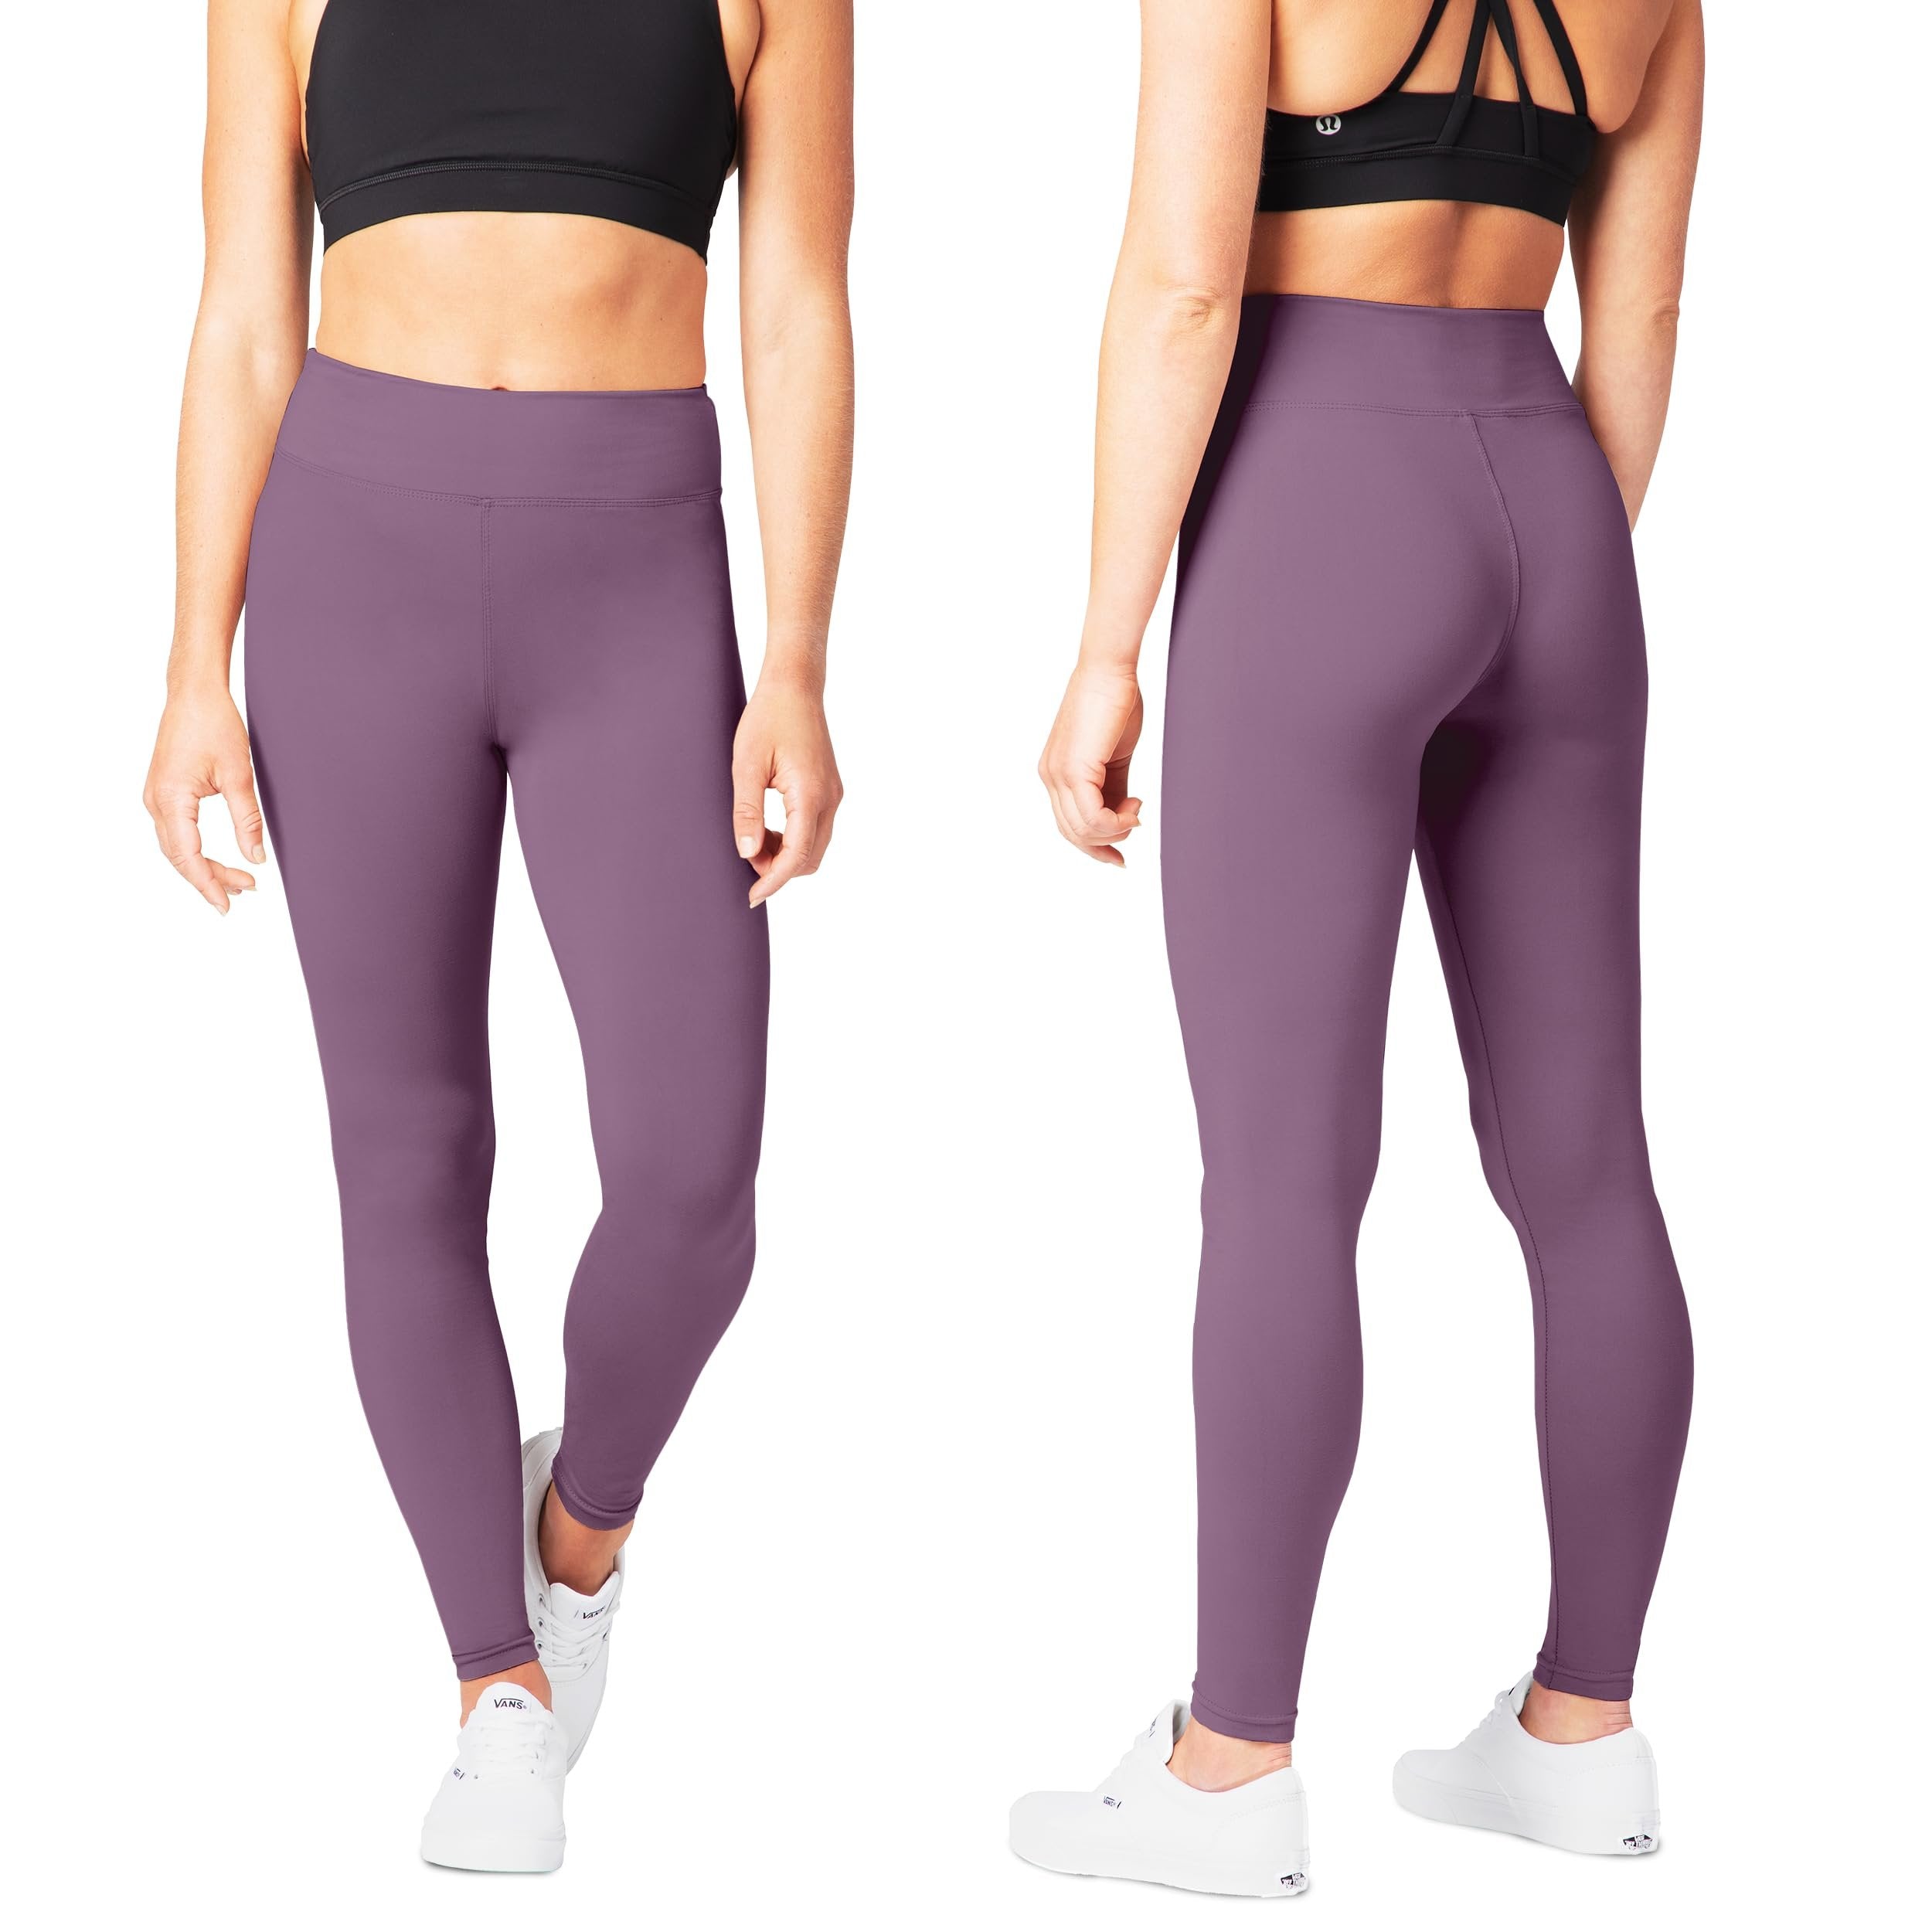 SATINA High Waisted Capri Leggings for Women - Capri Leggings for Women - High Waist for Tummy Control - Lavender Capri Leggings for |3 Inch Waistband (One Size, Lavender)